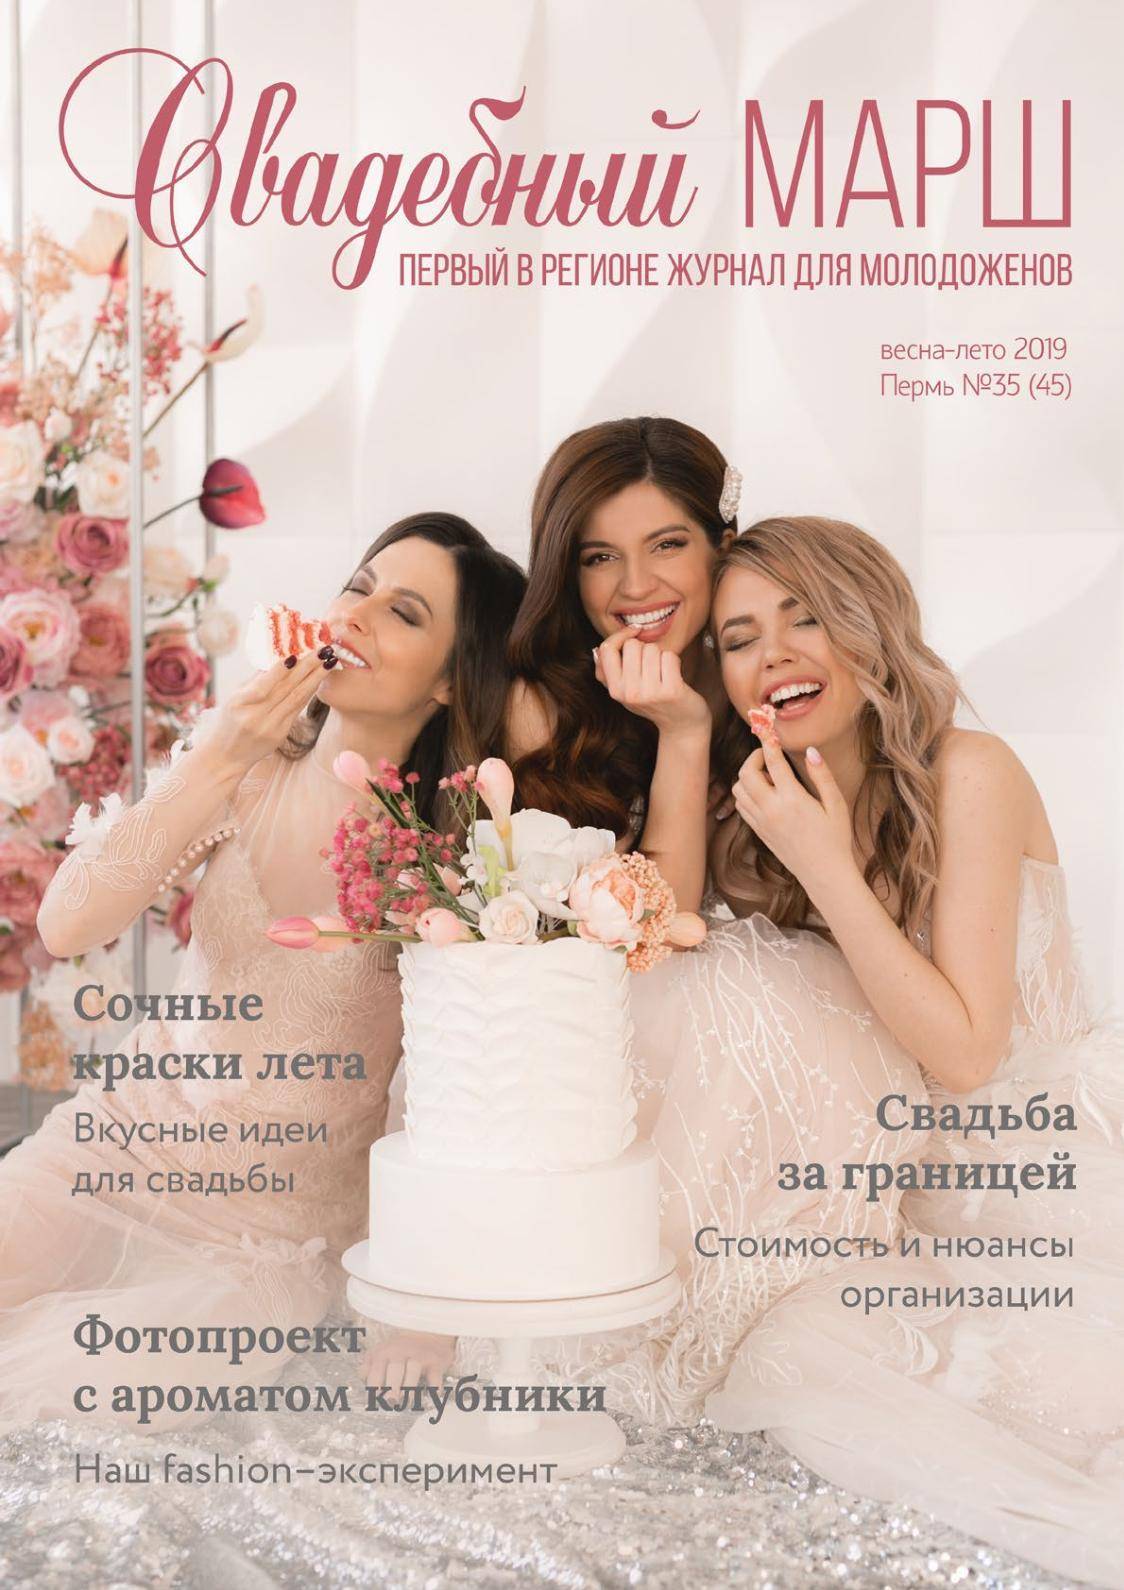 Шикарный свадебный макияж 2020-2021 - тренды сезона, фото идеи макияжа невесты | beautylooks